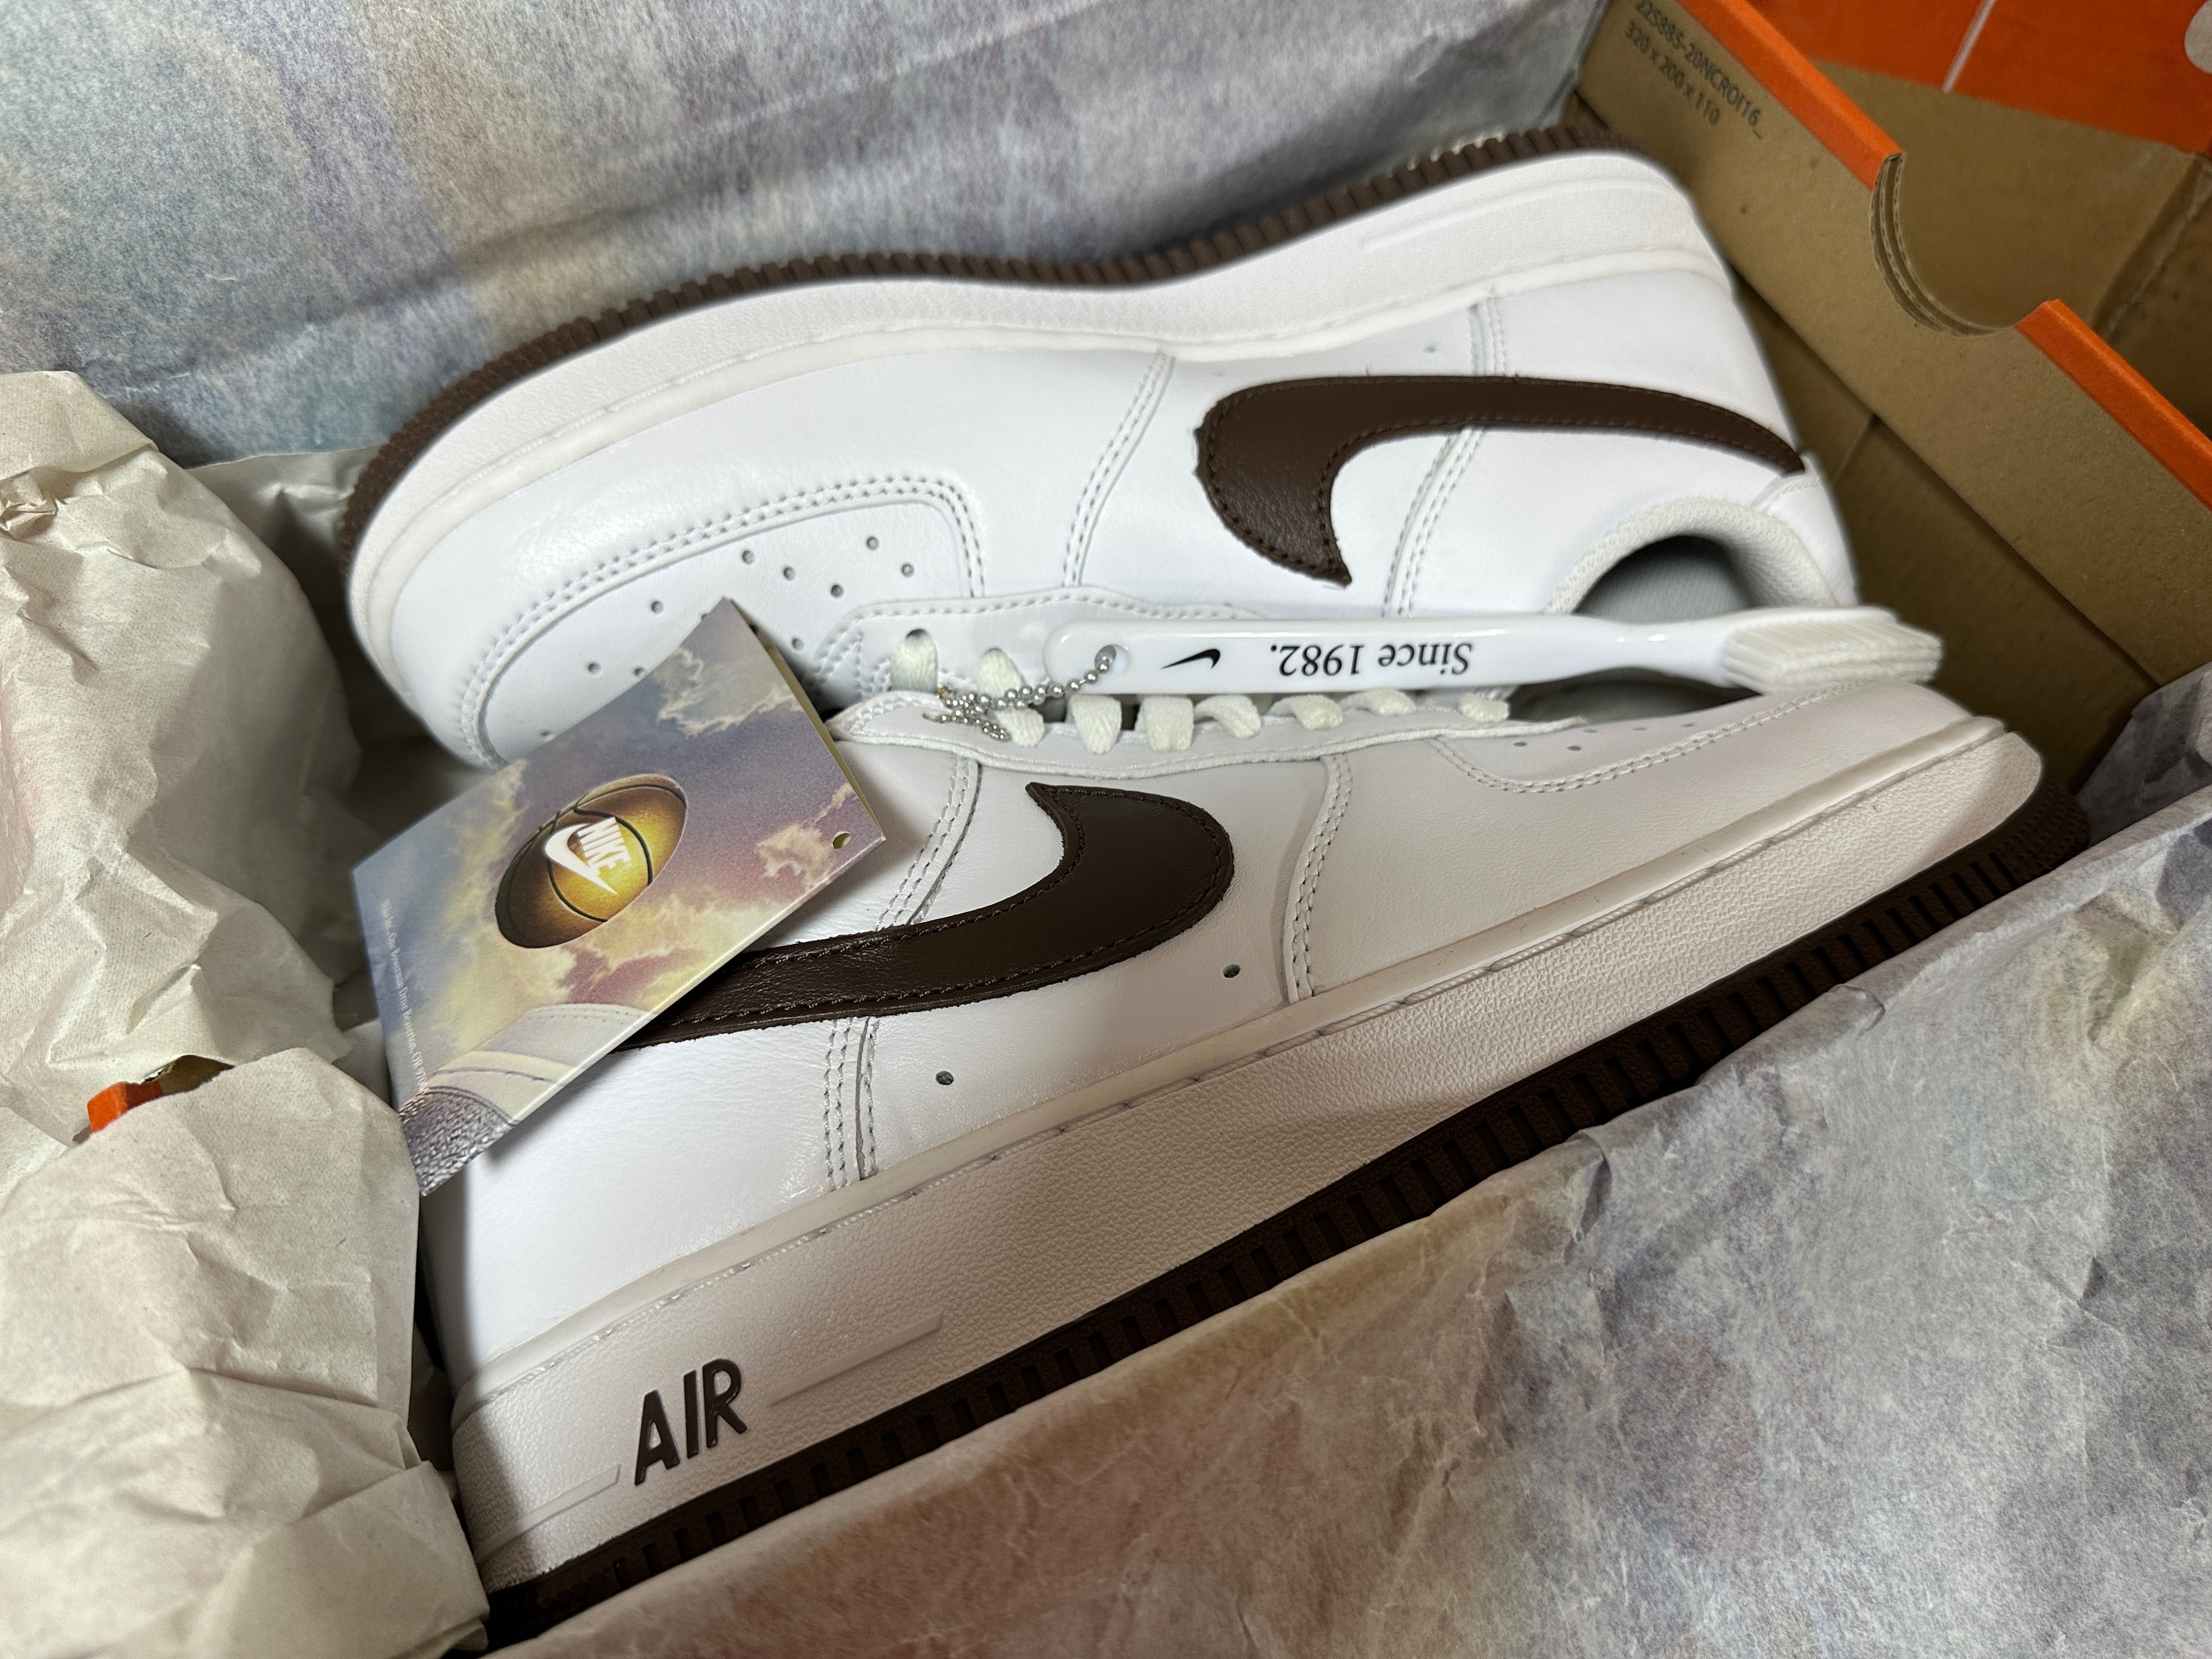 Кросівки Nike Air Force 1 Low Retro DM0576-100 кроссовки